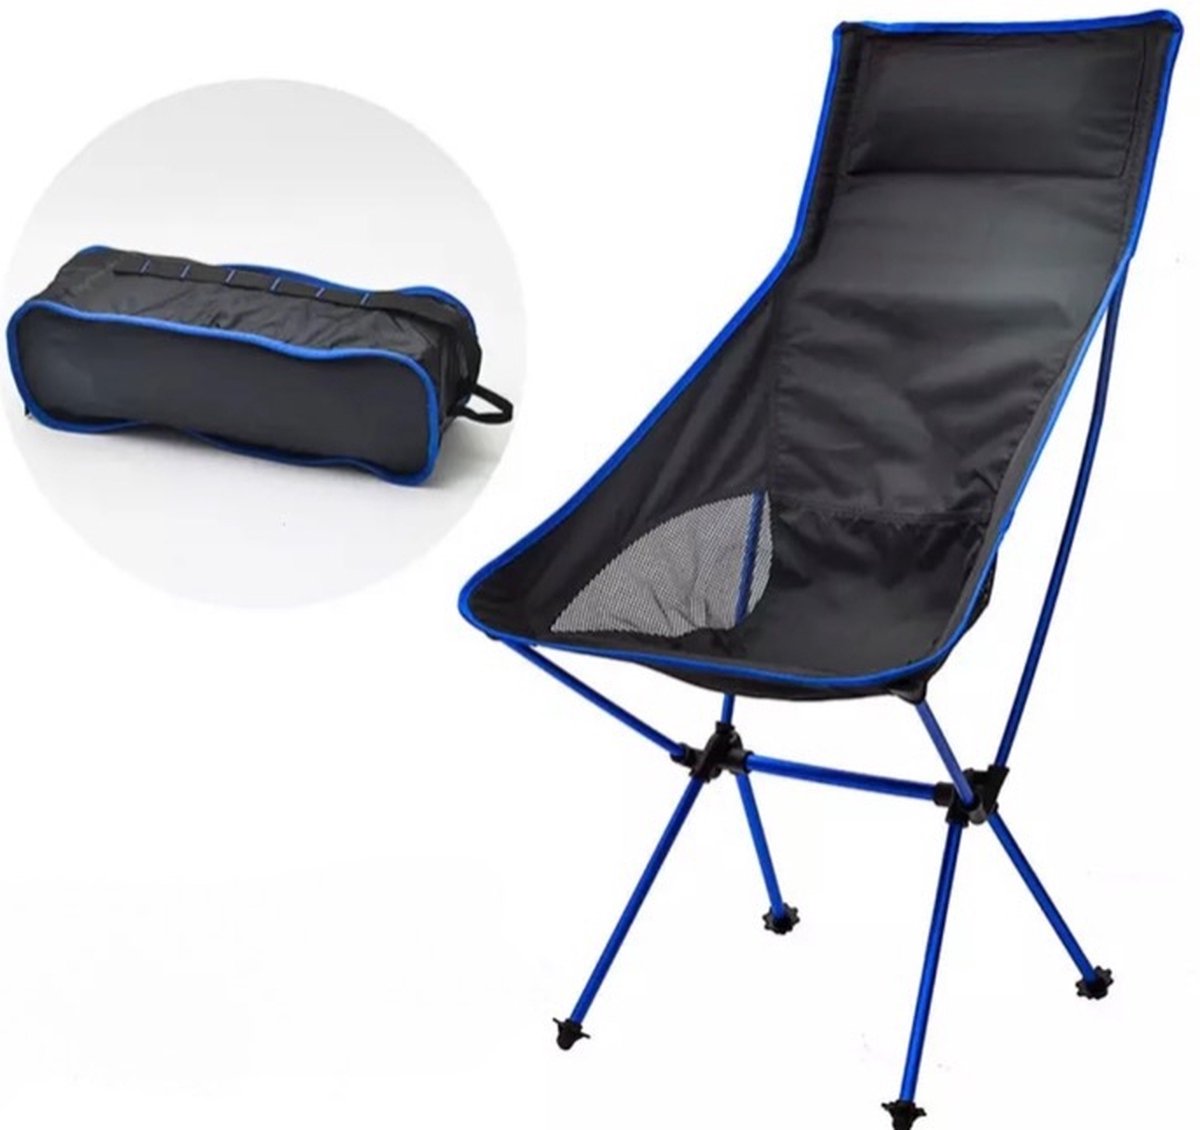 Strandstoel opvouwbaar met hoofdkussen - Kampeer vouwstoel - Karper/viskruk - Plooistoel - Ultralicht picknick meubel - Blauw